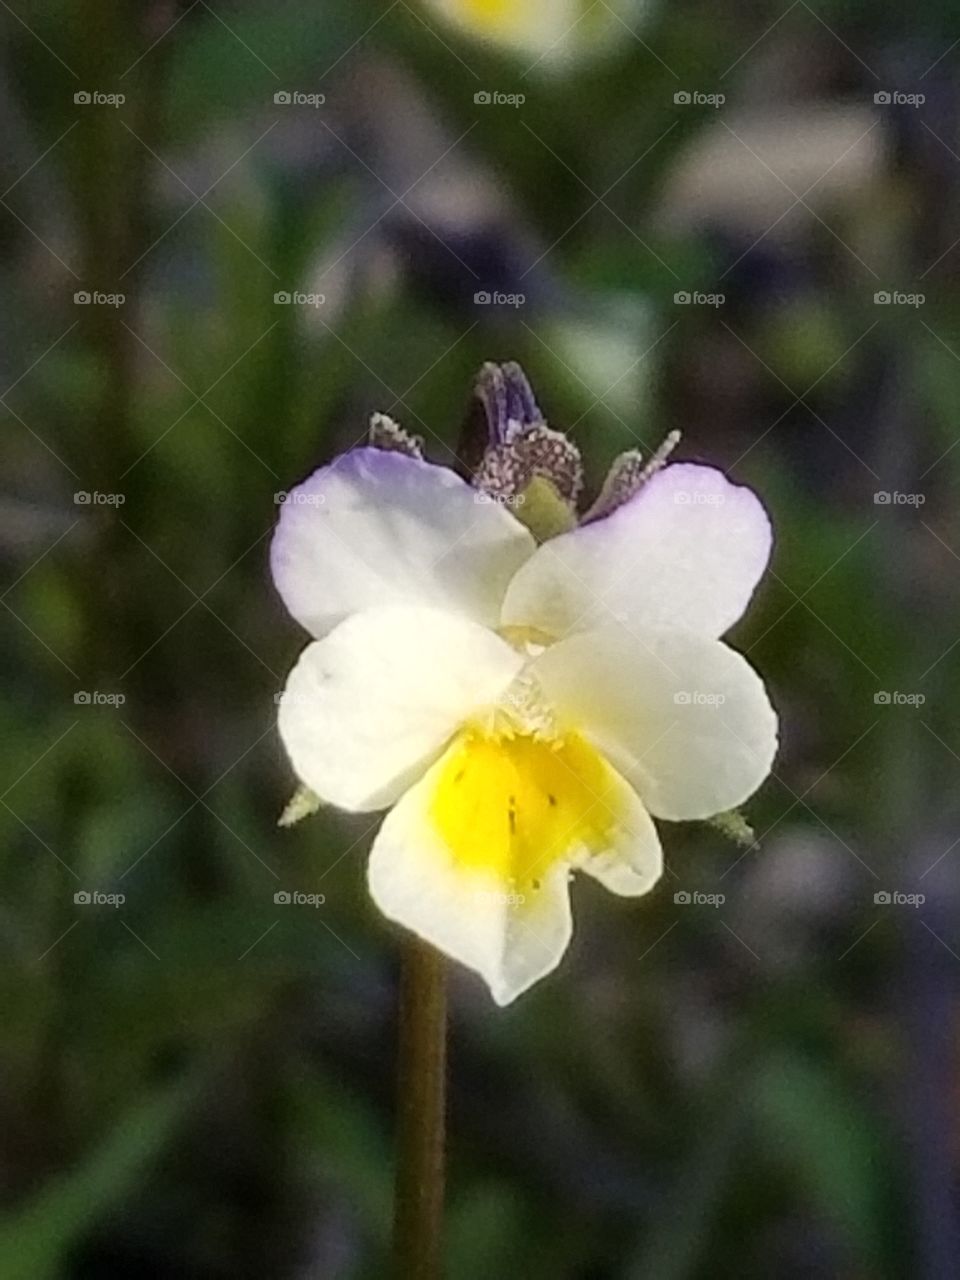 Tiny flowering plant